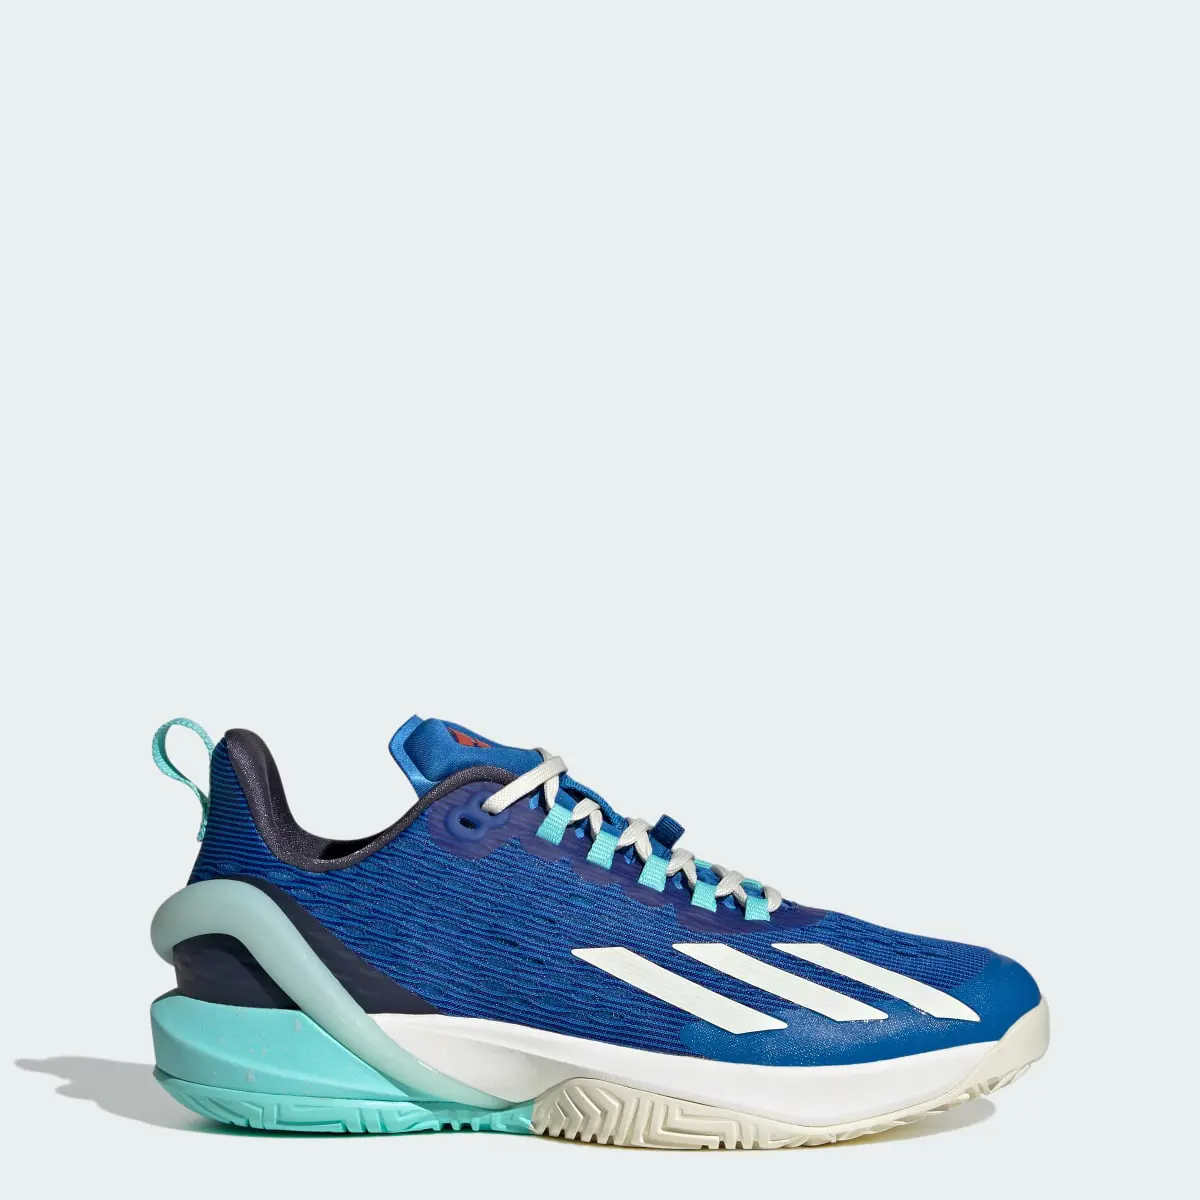 Adidas adizero Cybersonic Tennis Shoes. 1